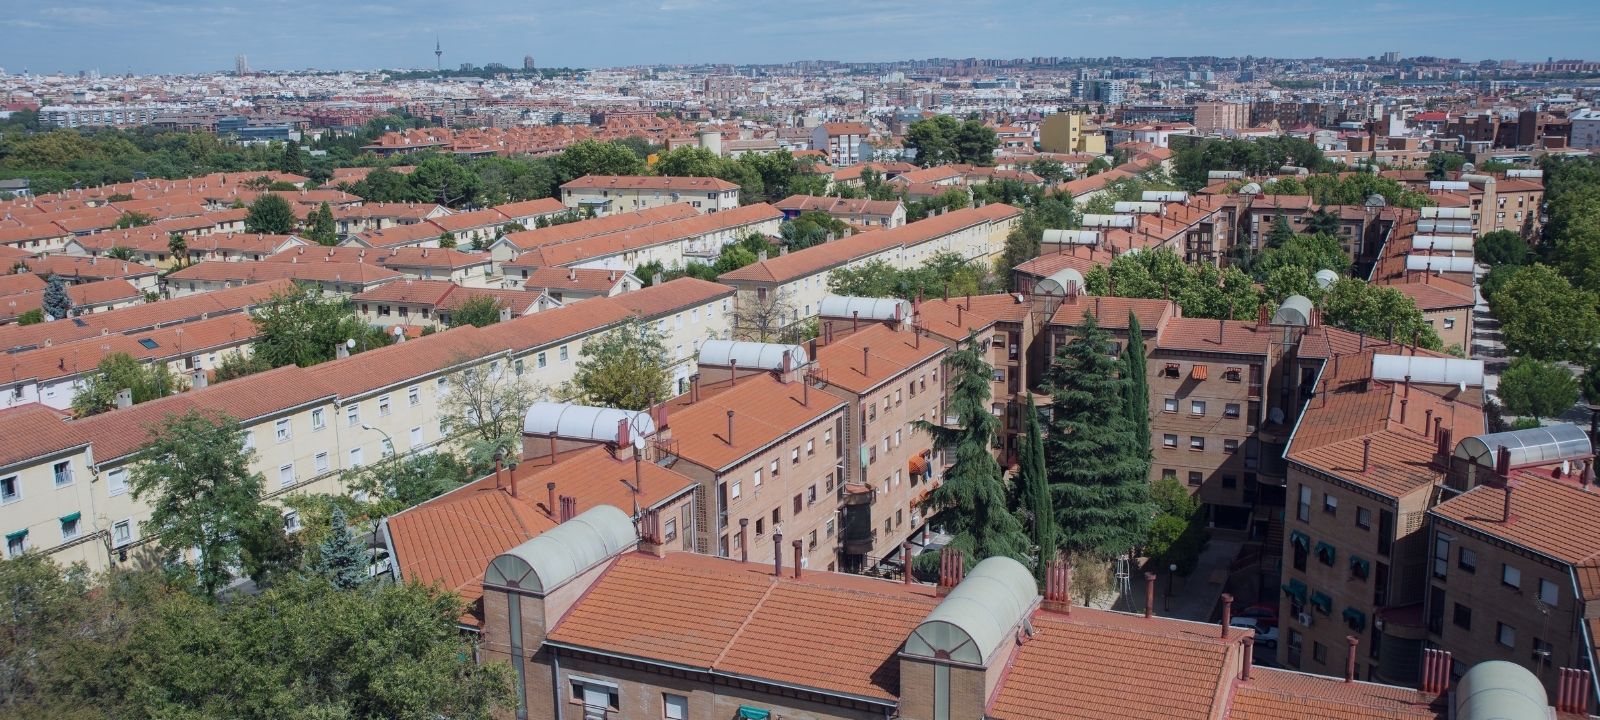 Dónde encontrar casas baratas en Madrid. Estimación por barrios